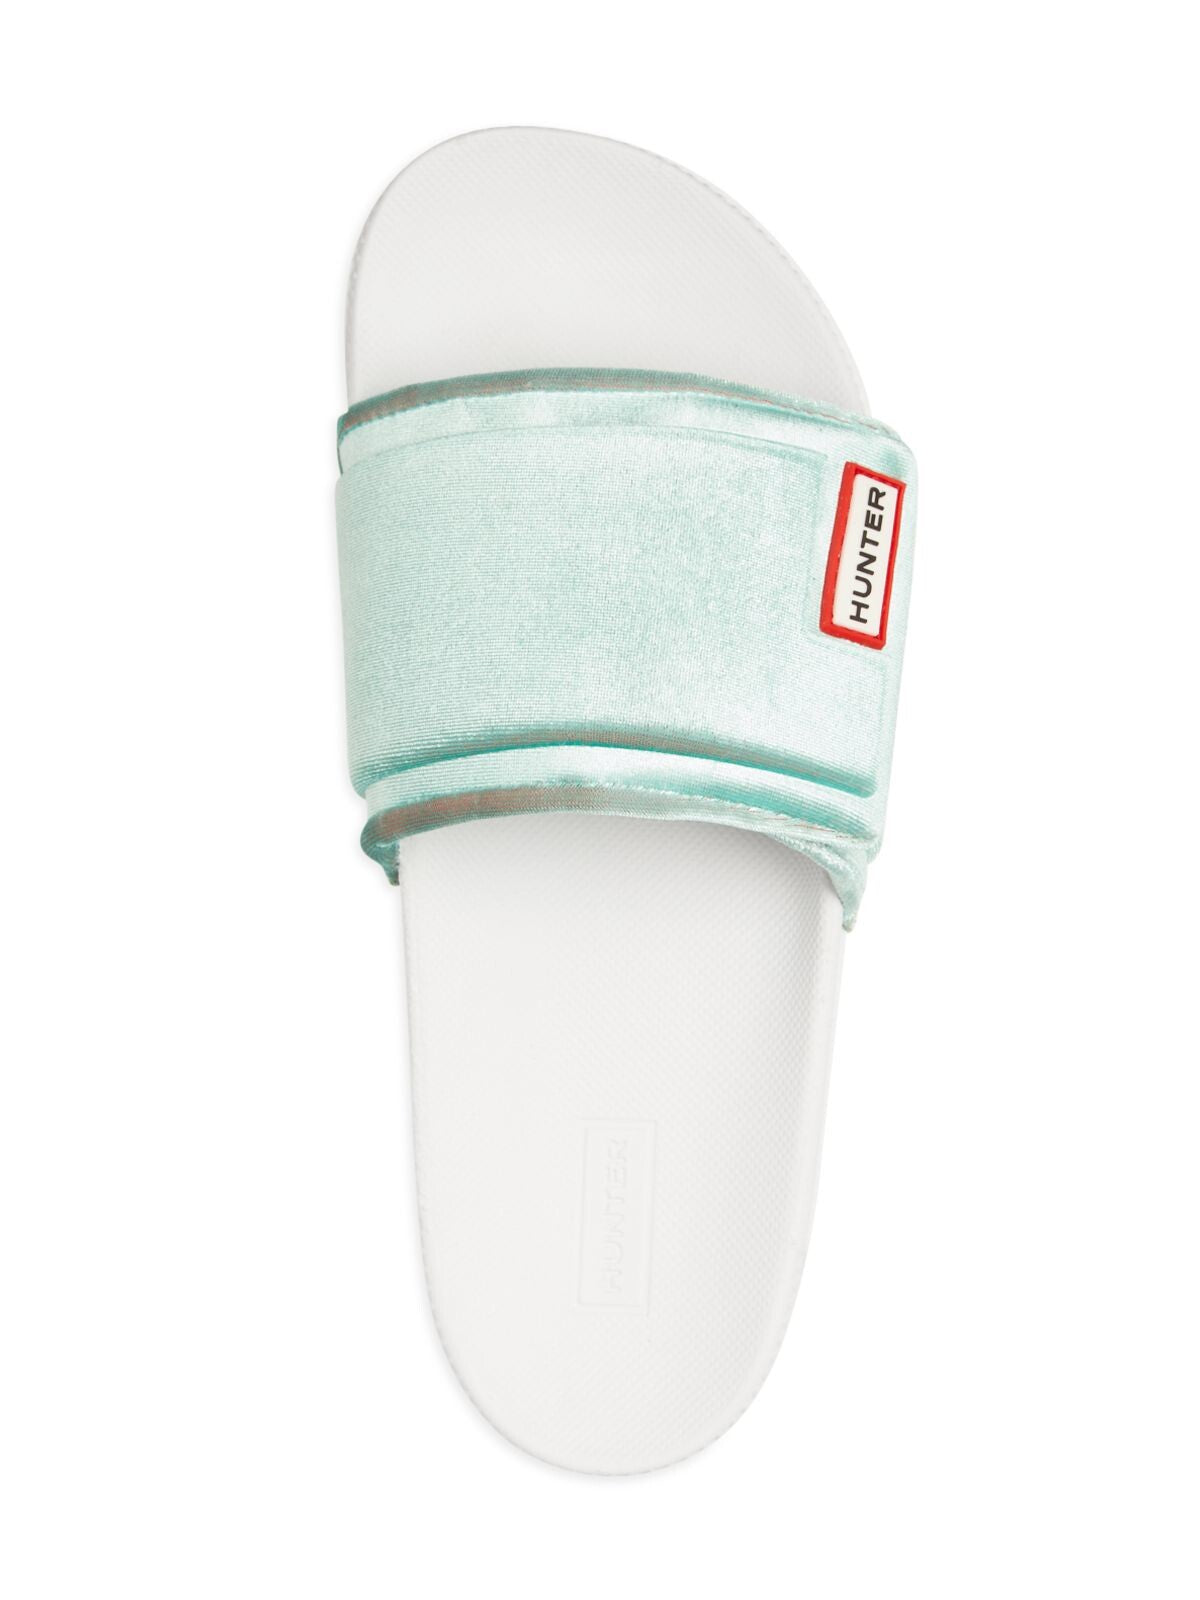 HUNTER Womens Teal Adjustable Strap Comfort Round Toe Platform Slip On Slide Sandals 8